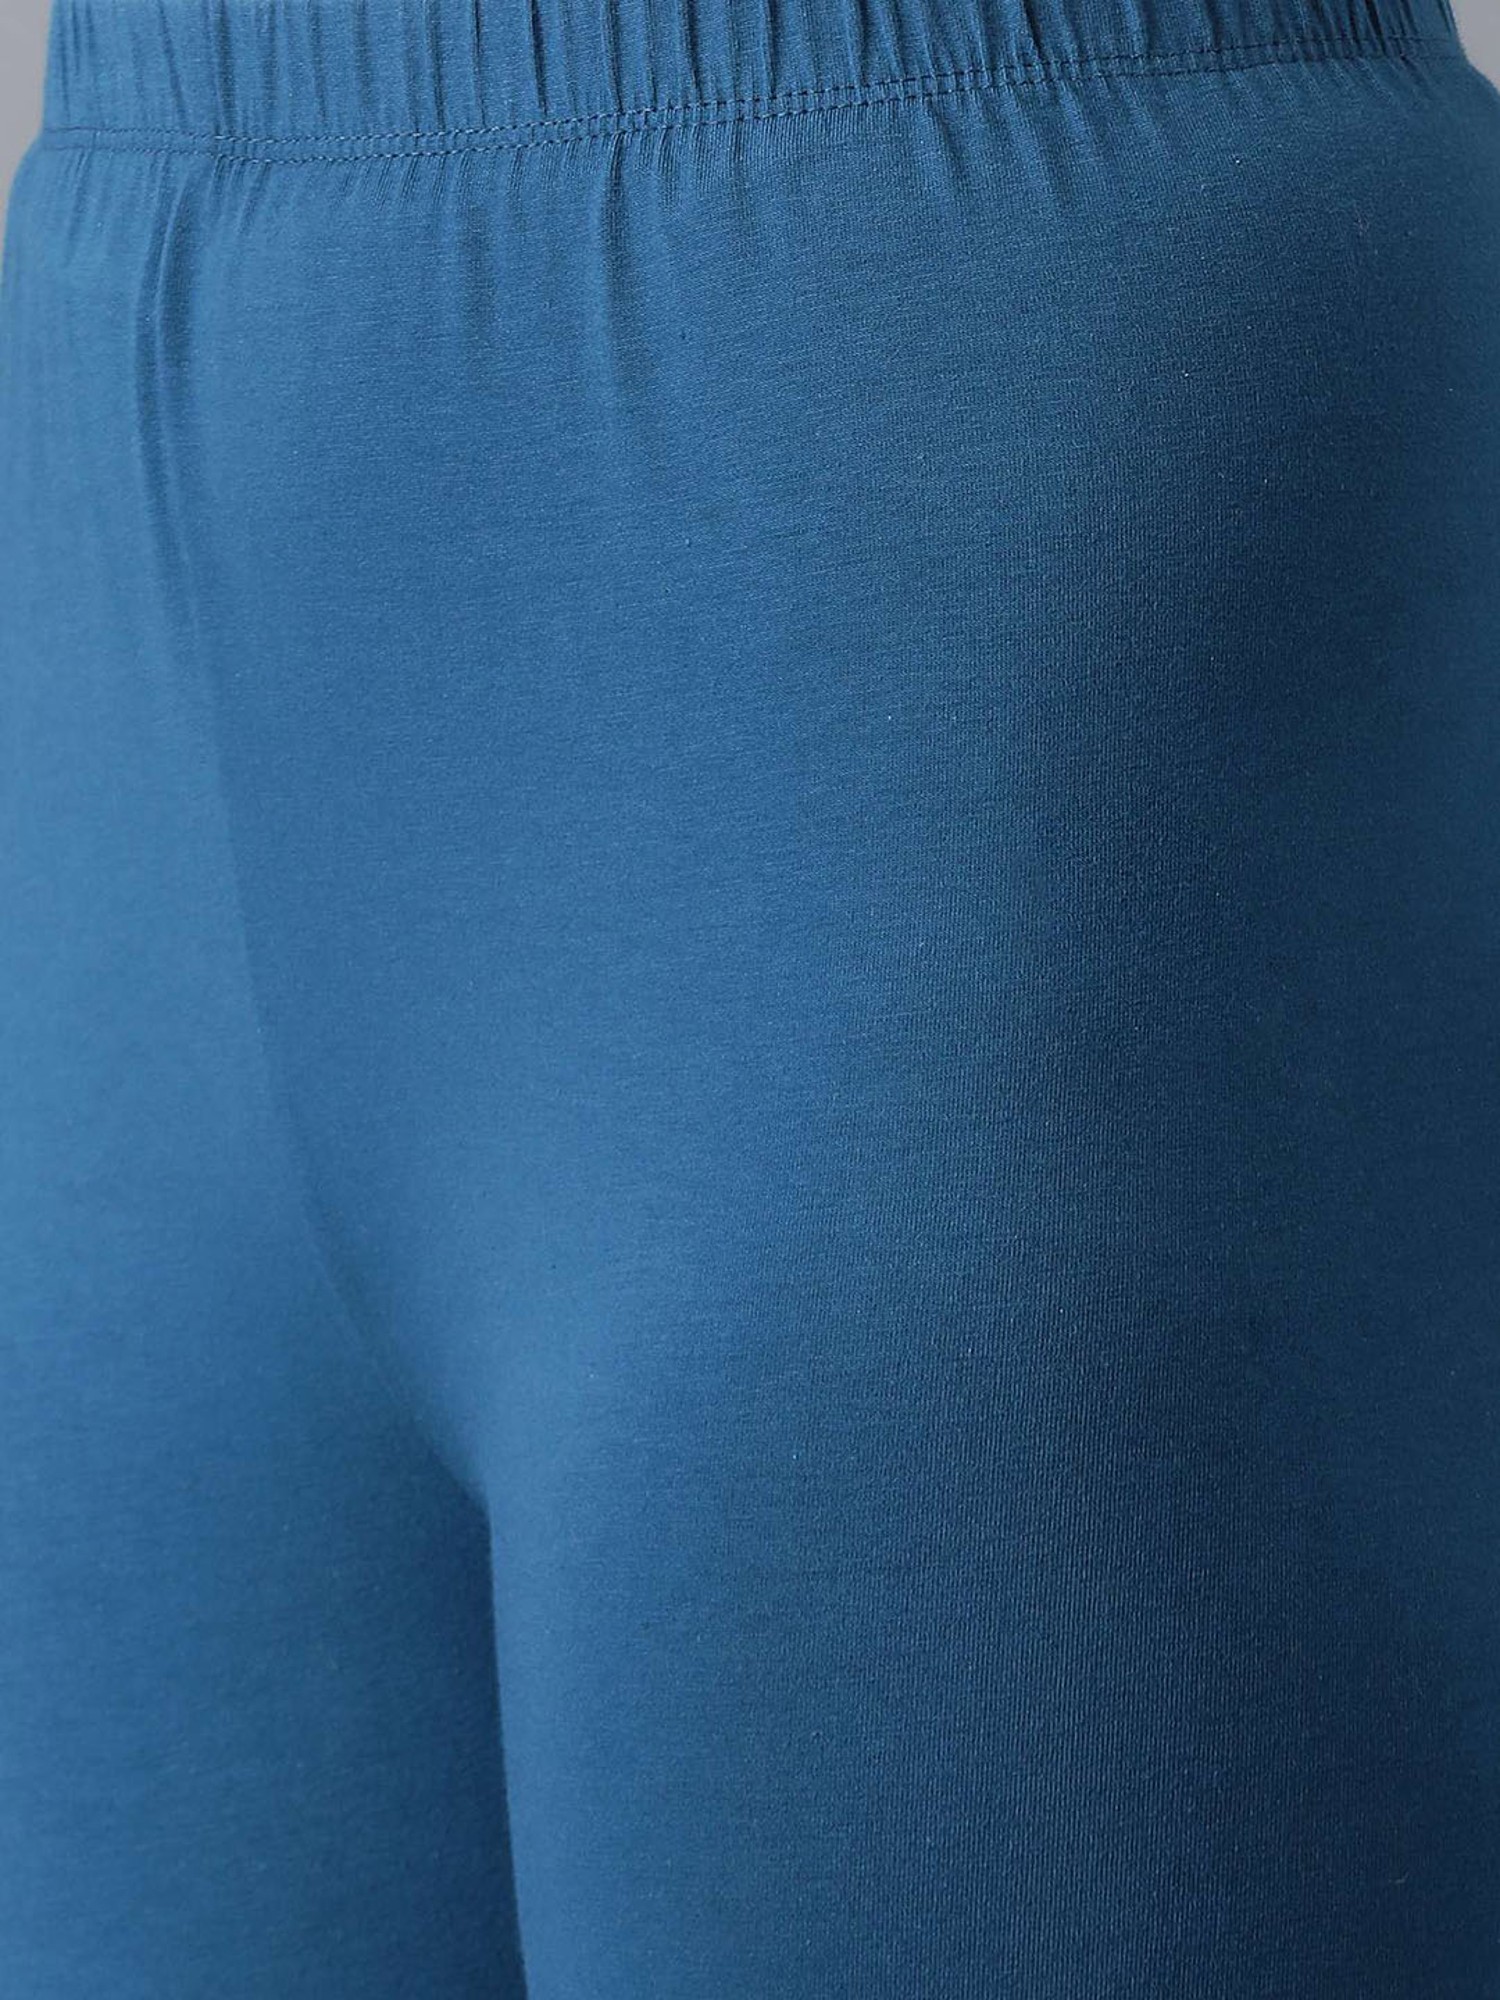 Buy Elleven Blue Leggings for Women's Online @ Tata CLiQ